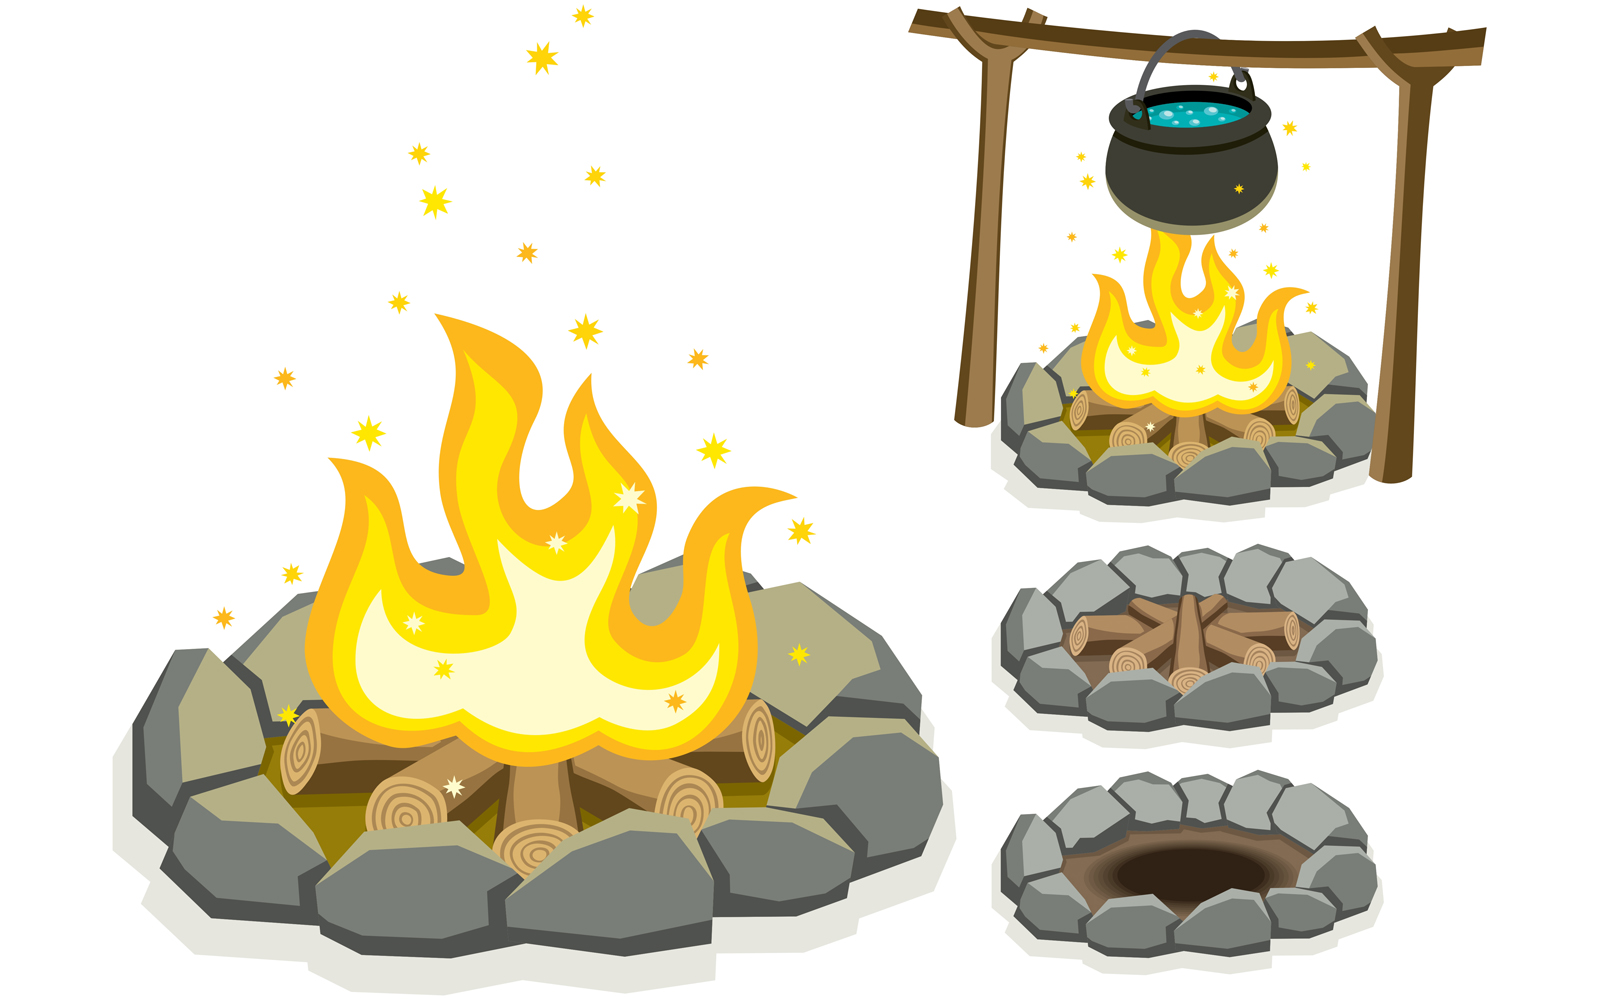 Campfire - Illustration